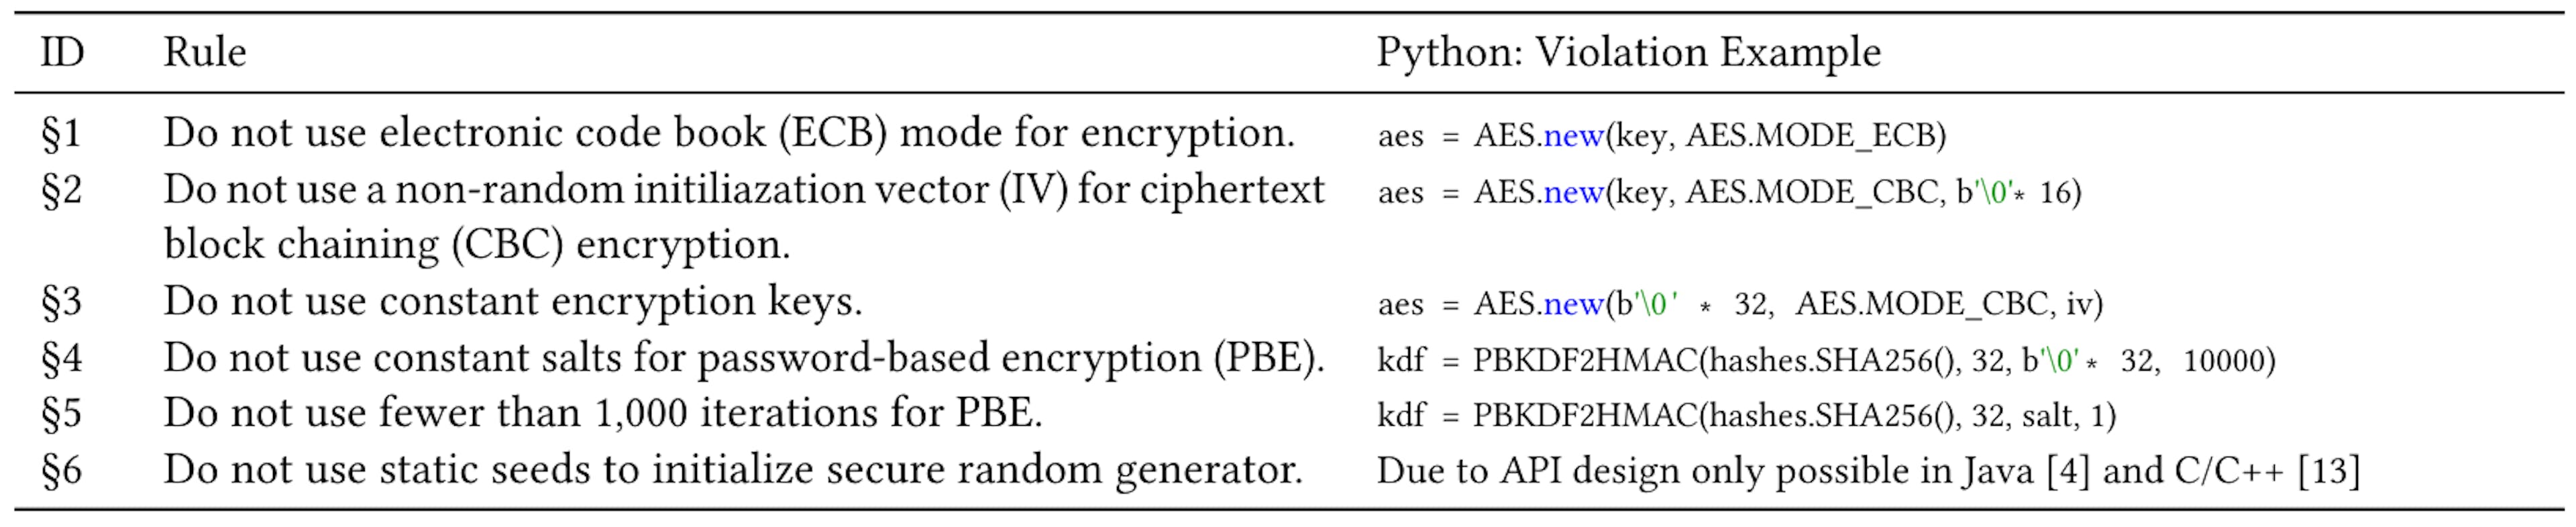 表 1：Java 和 C [4, 13] 中六种常见的加密误用，以及 Python 中违规的示例。